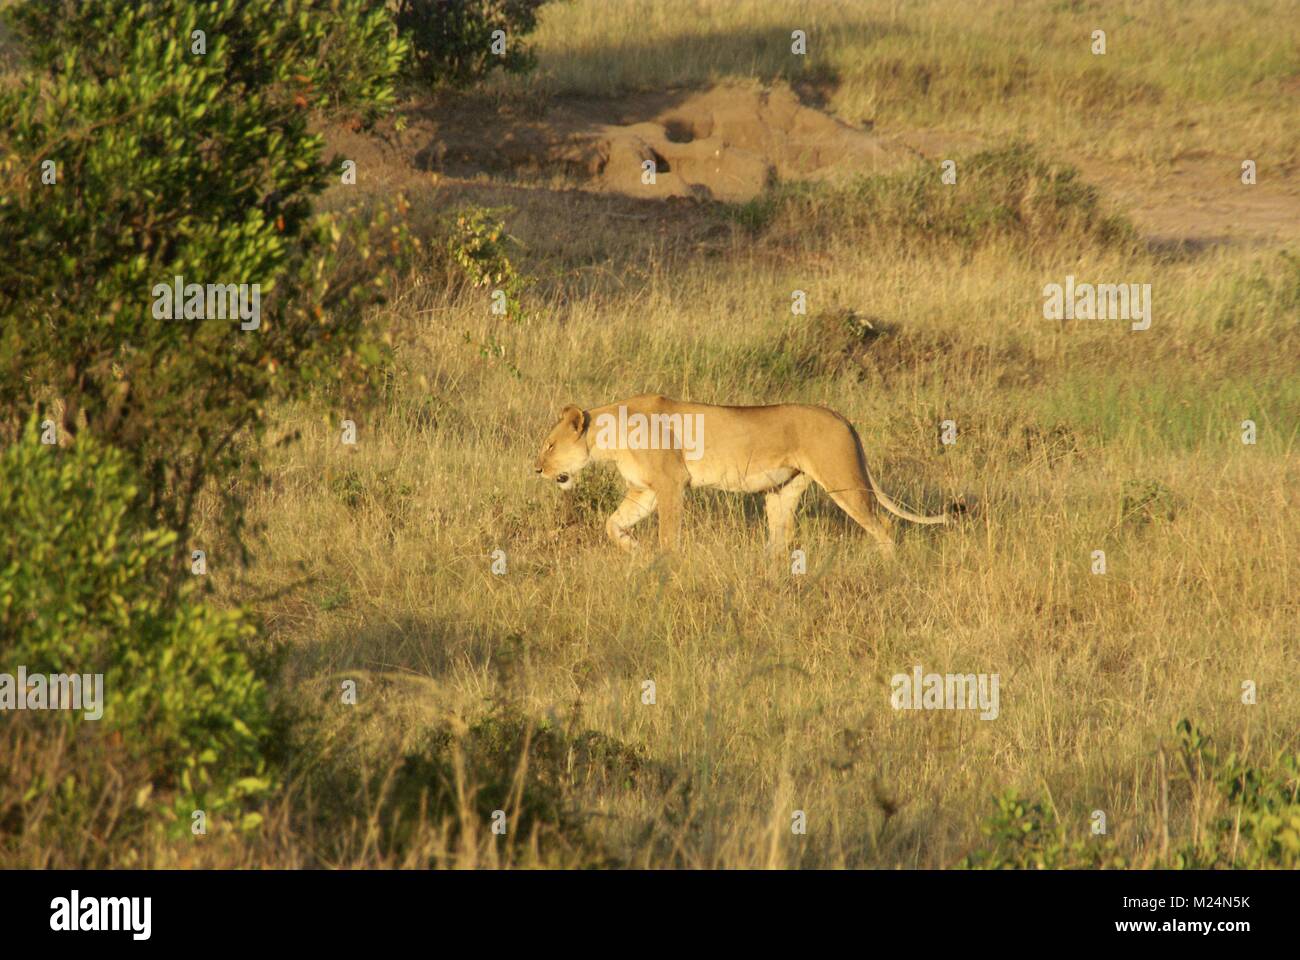 Lion safari kenya afrique du sud Banque D'Images